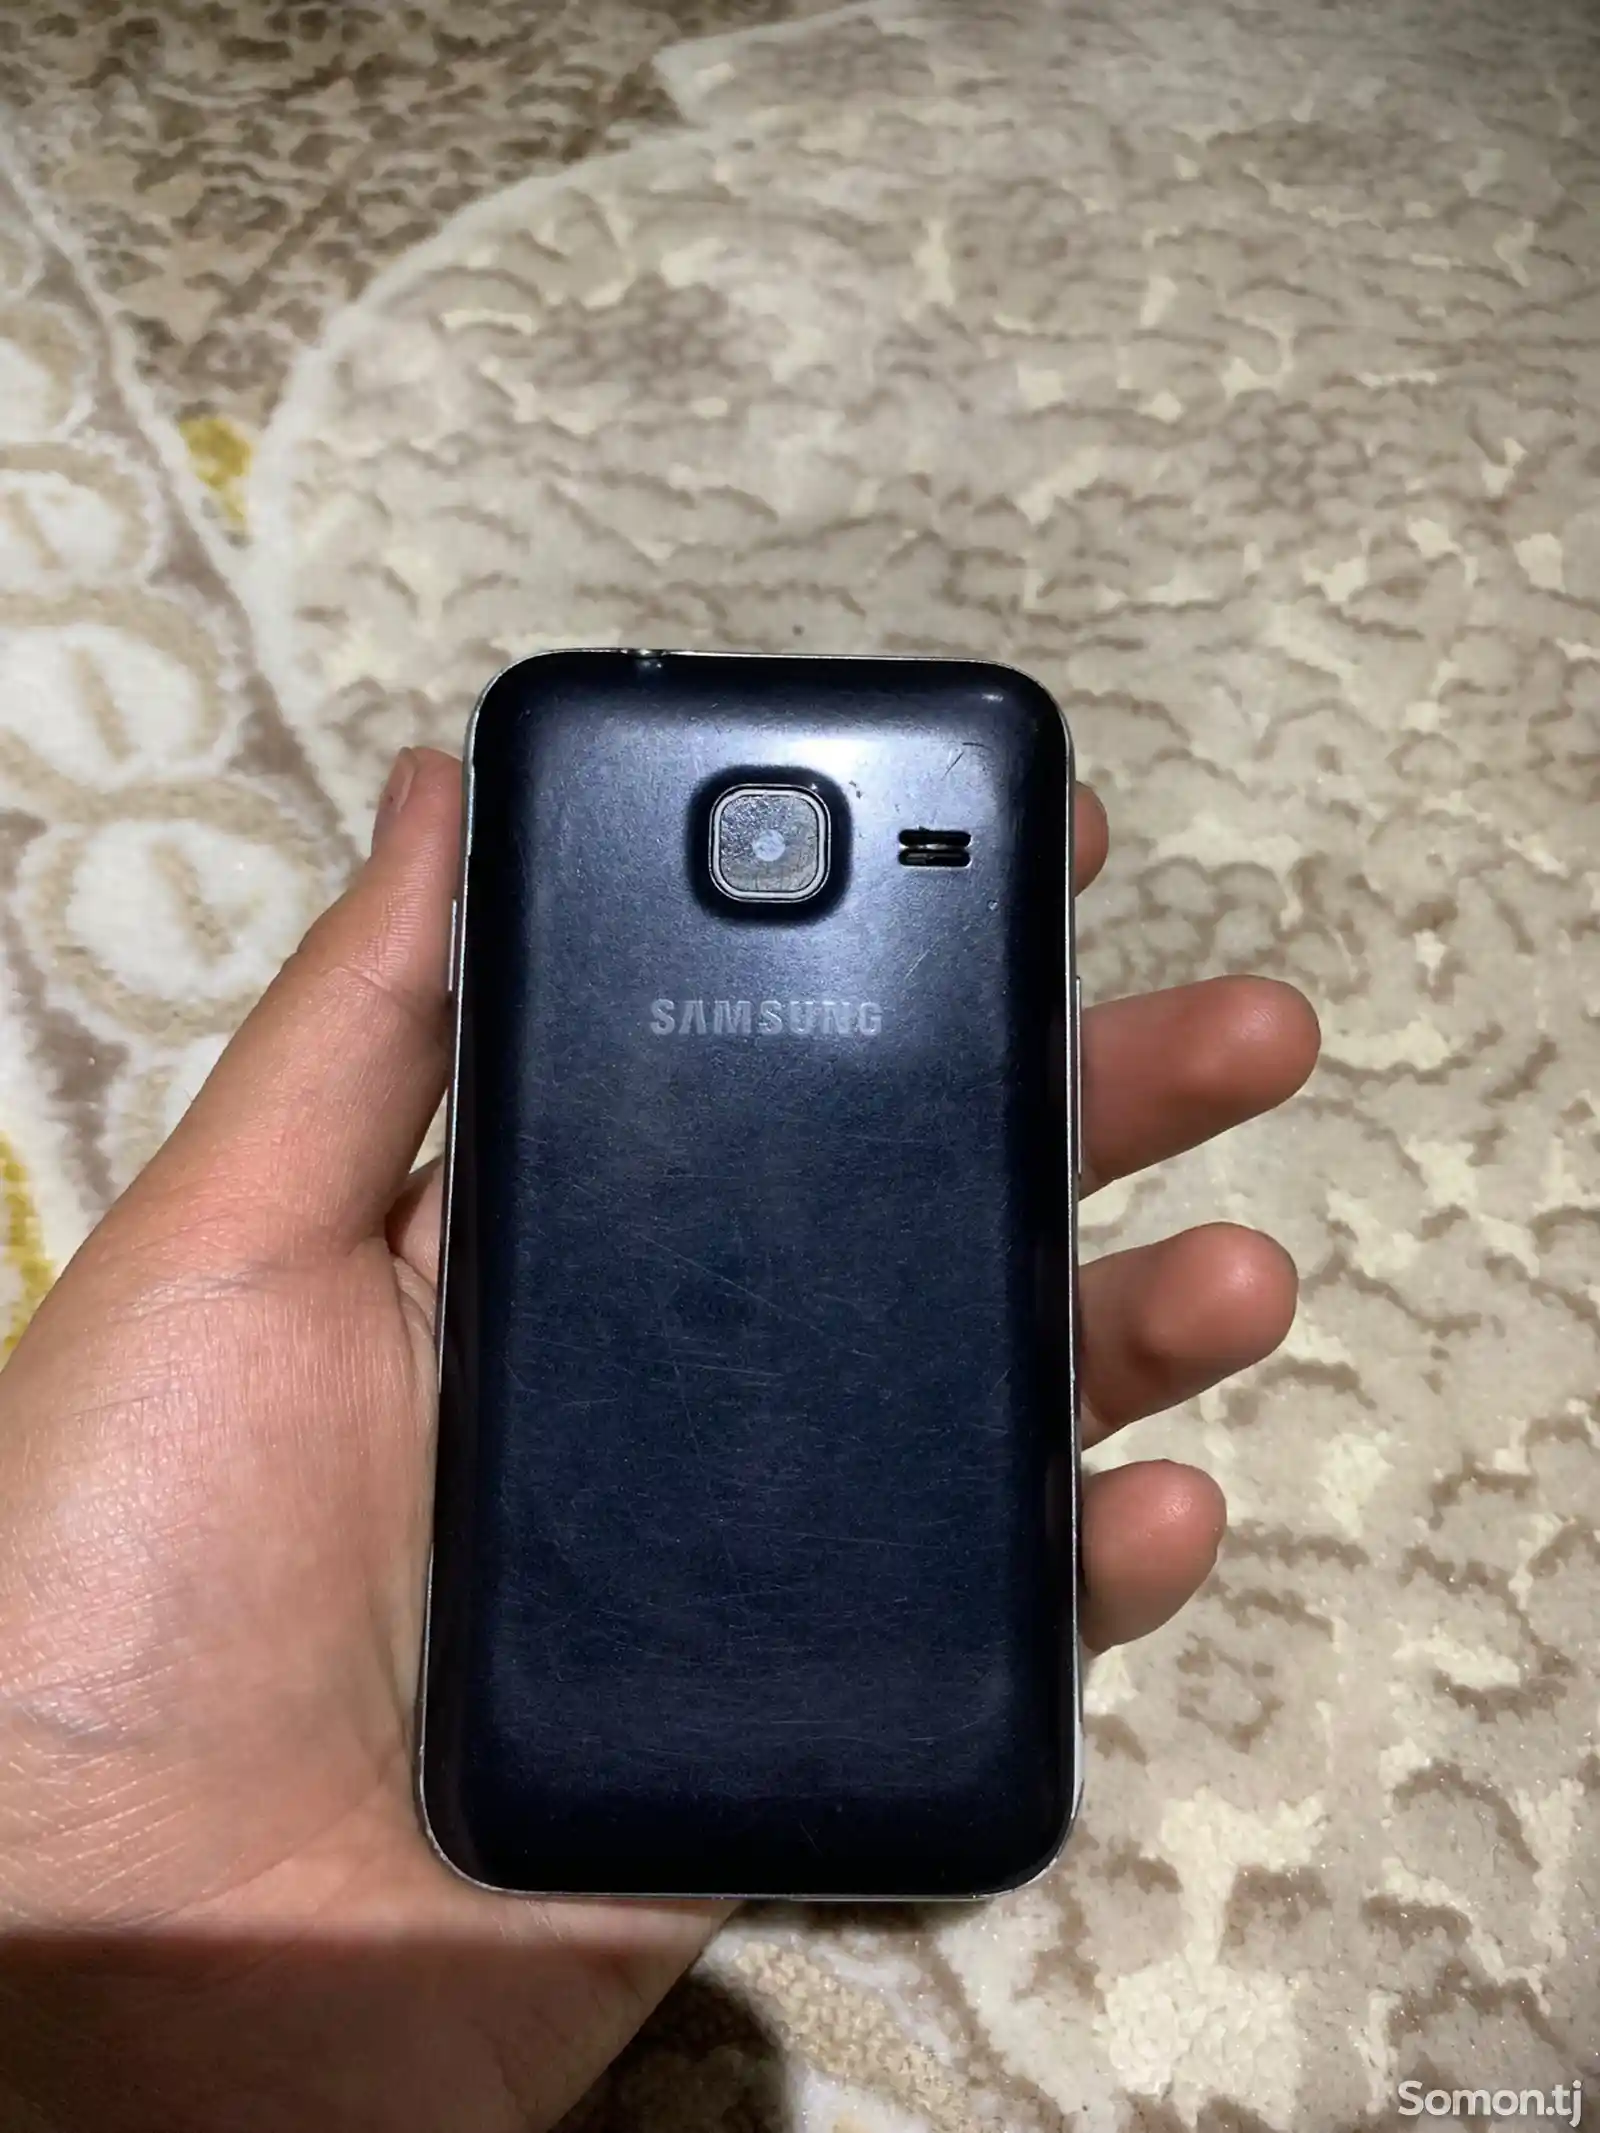 Samsung Galaxy J1 mini-4